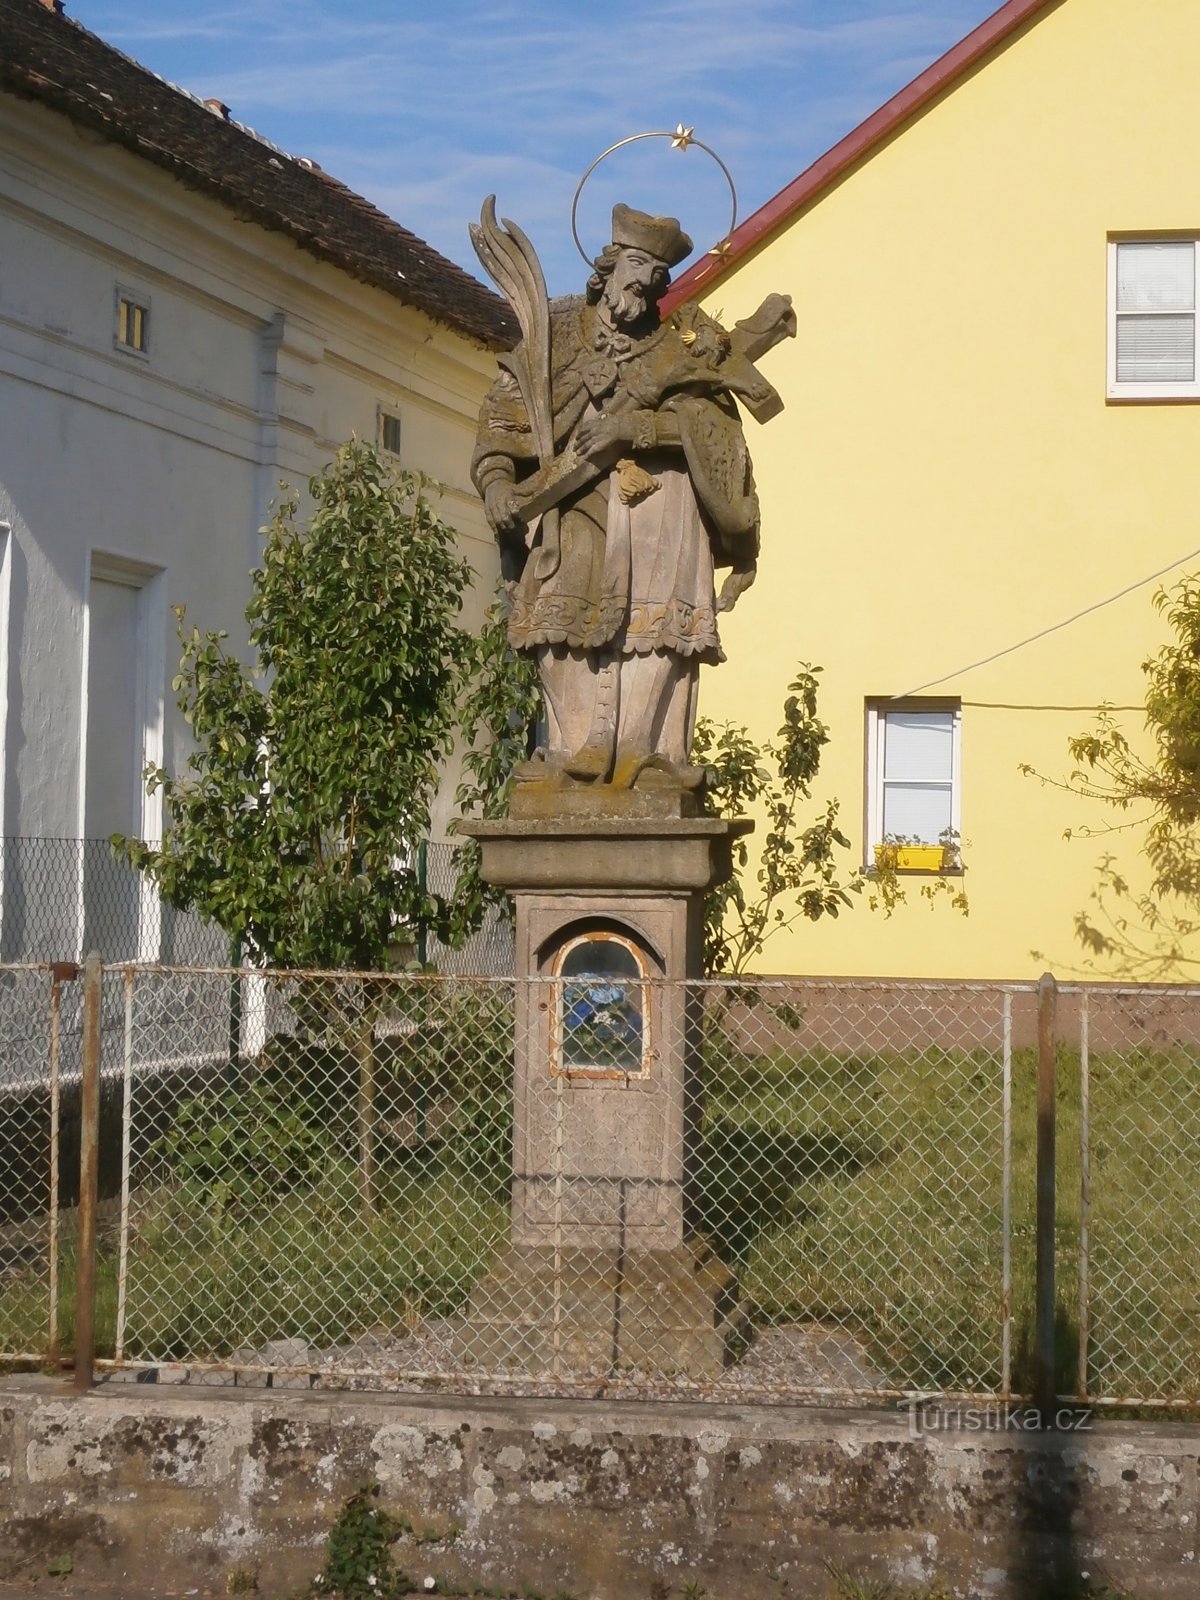 Statuia Sf. Ioan din Nepomuck, care anterior a fost însoțit de clopotnița originală (Černožice